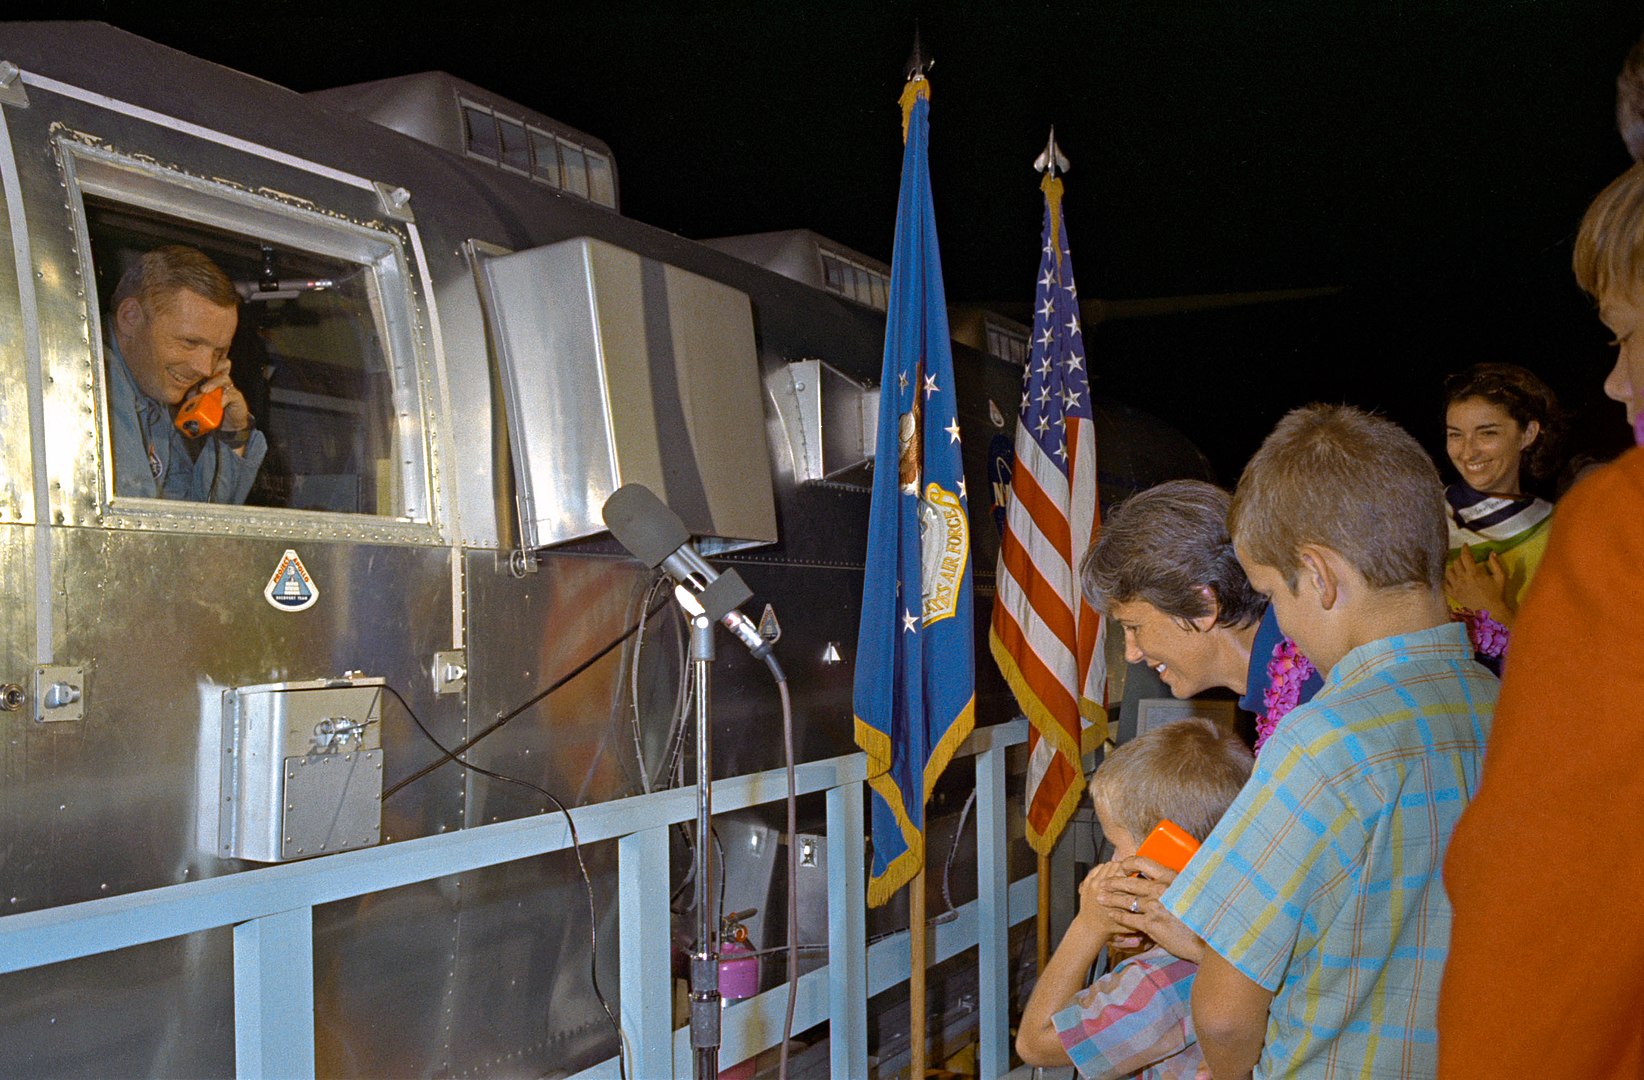 Нил Армстронг разговаривает из карантинного фургона с младшим сыном Марком. Рядом его жена Дженет и старший сын Эрик. Фото: NASA. Общественное достояние, ru.wikipedia.org